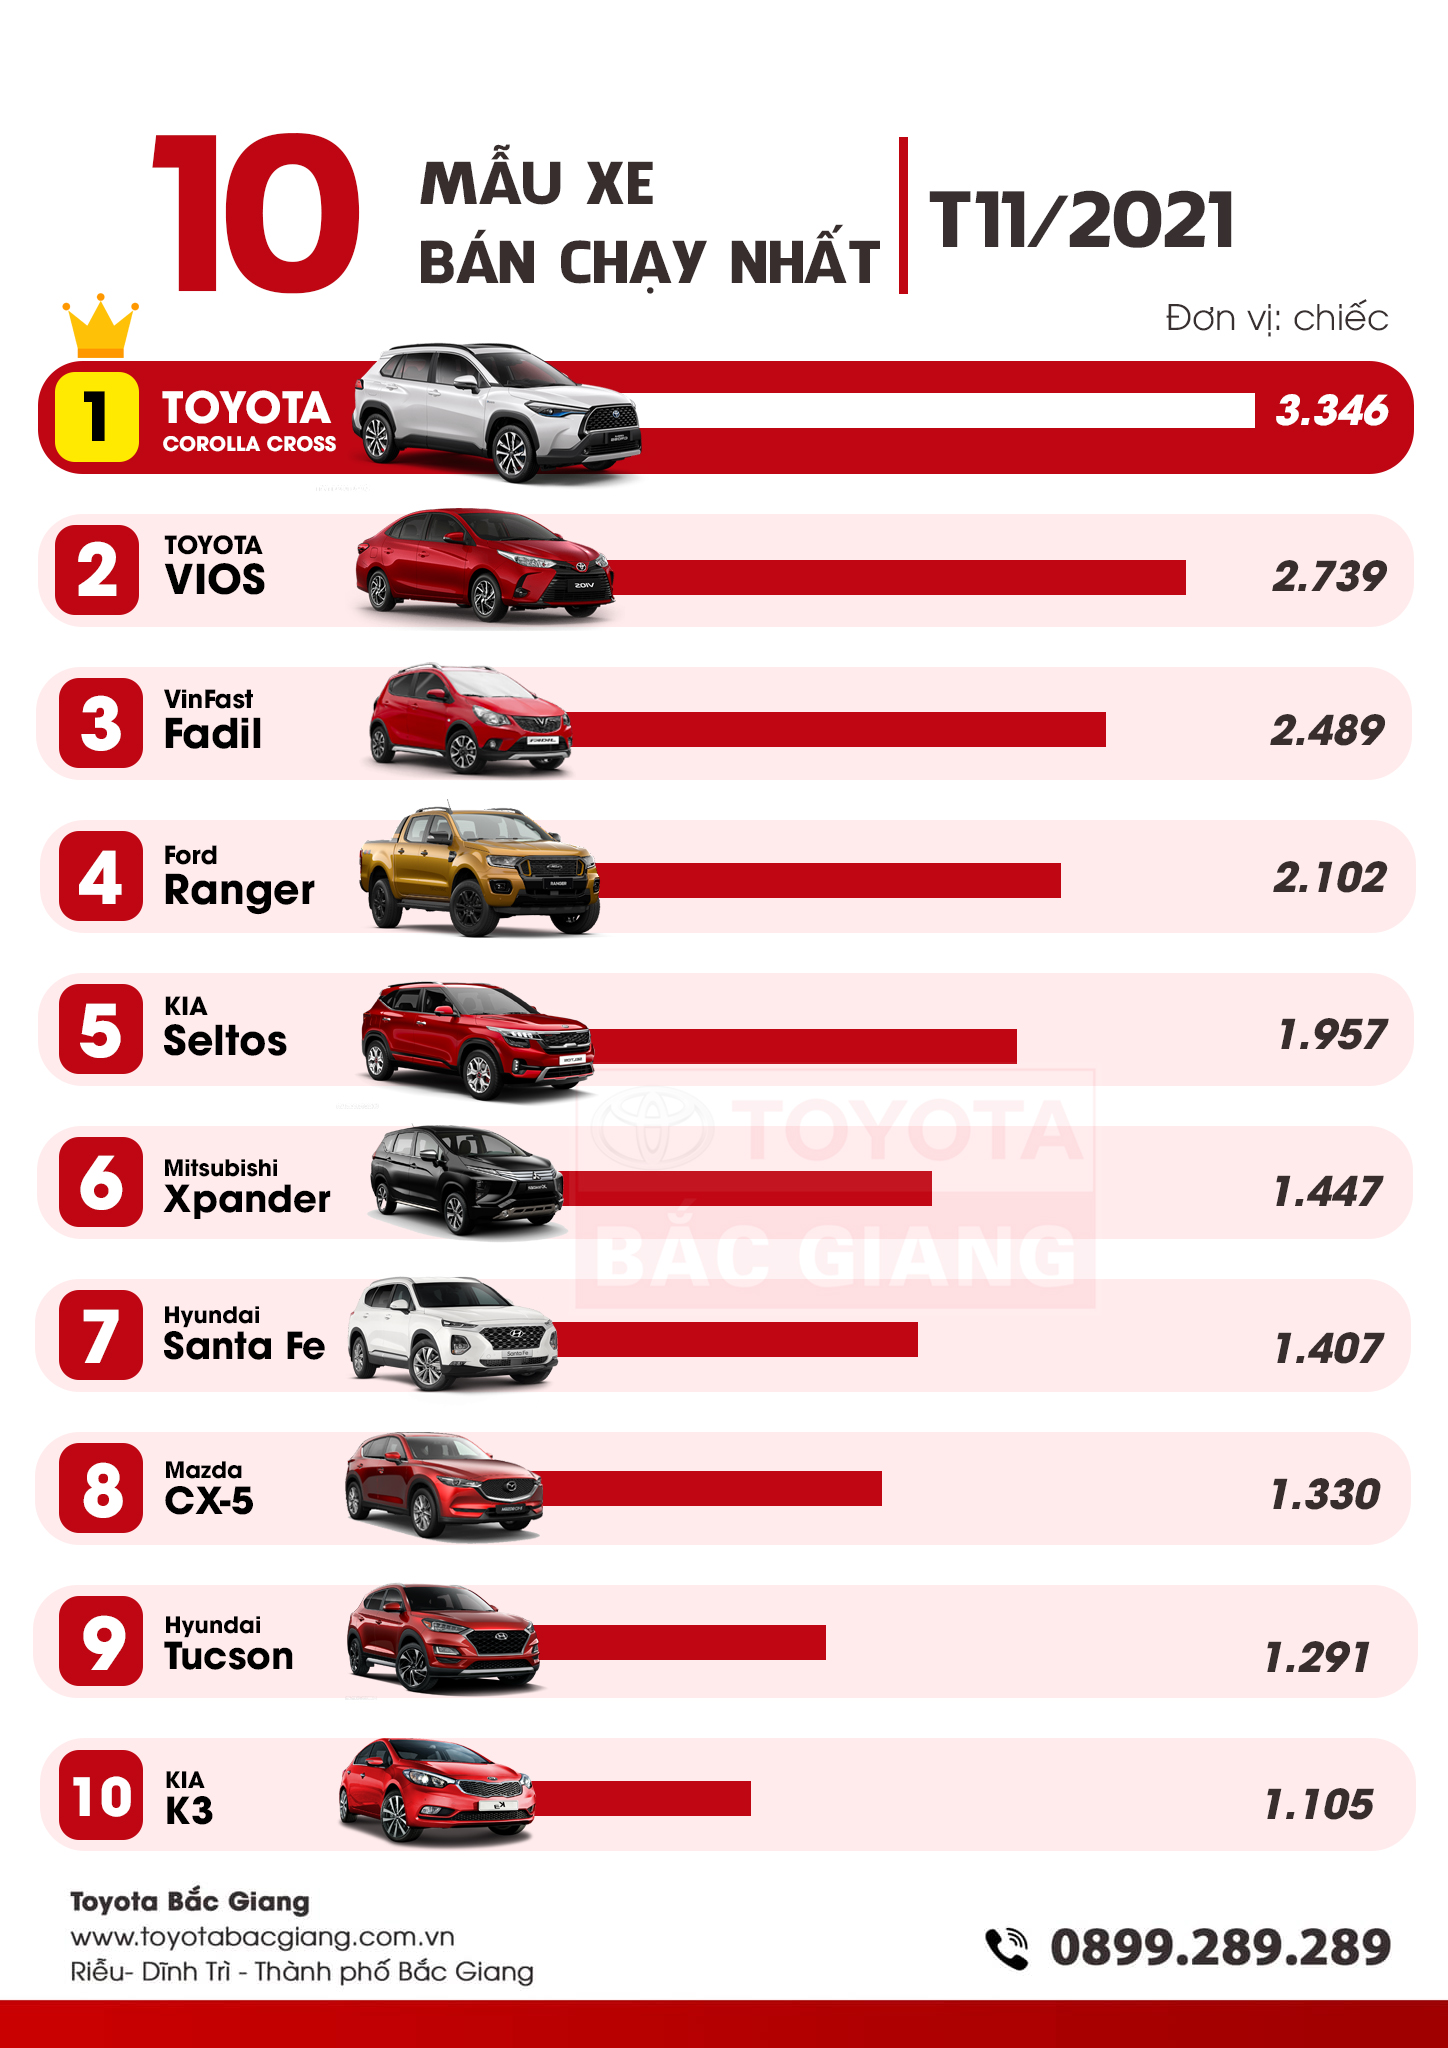 Xe bán chạy tháng 11/2021: Toyota Corolla Cross vượt lên dẫn đầu